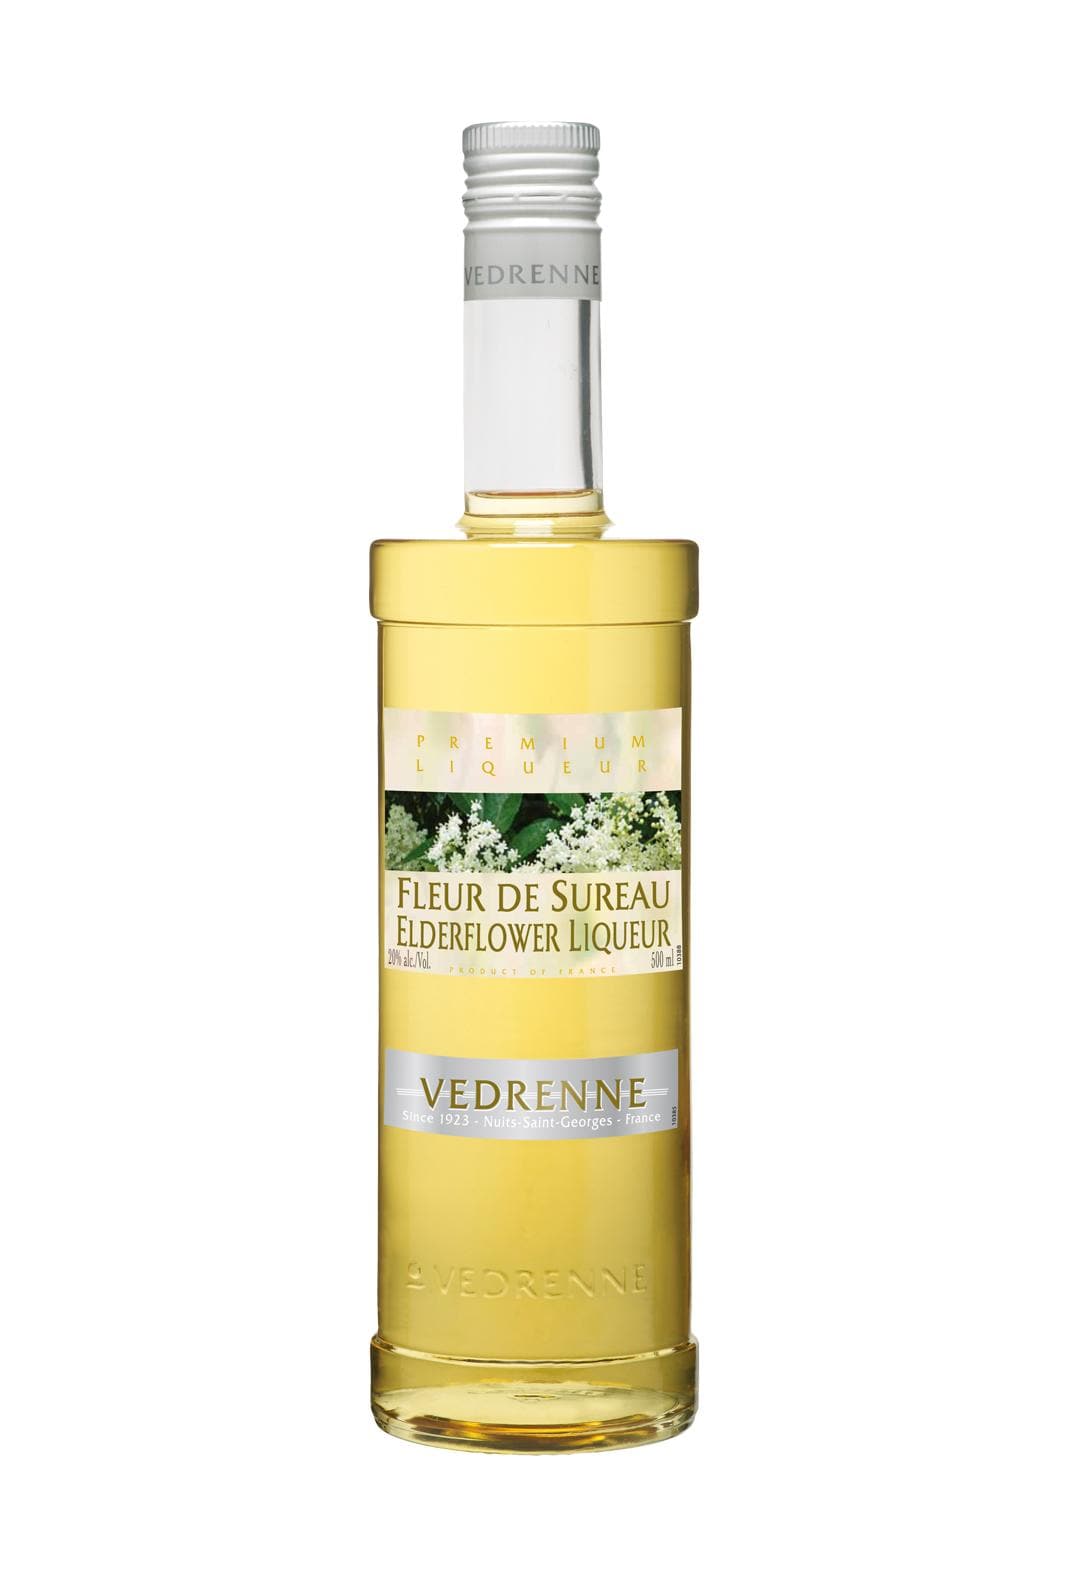 Vedrenne Liqueur de Fleur de Sureau (Elderflower) 20% 700ml | Liqueurs | Shop online at Spirits of France